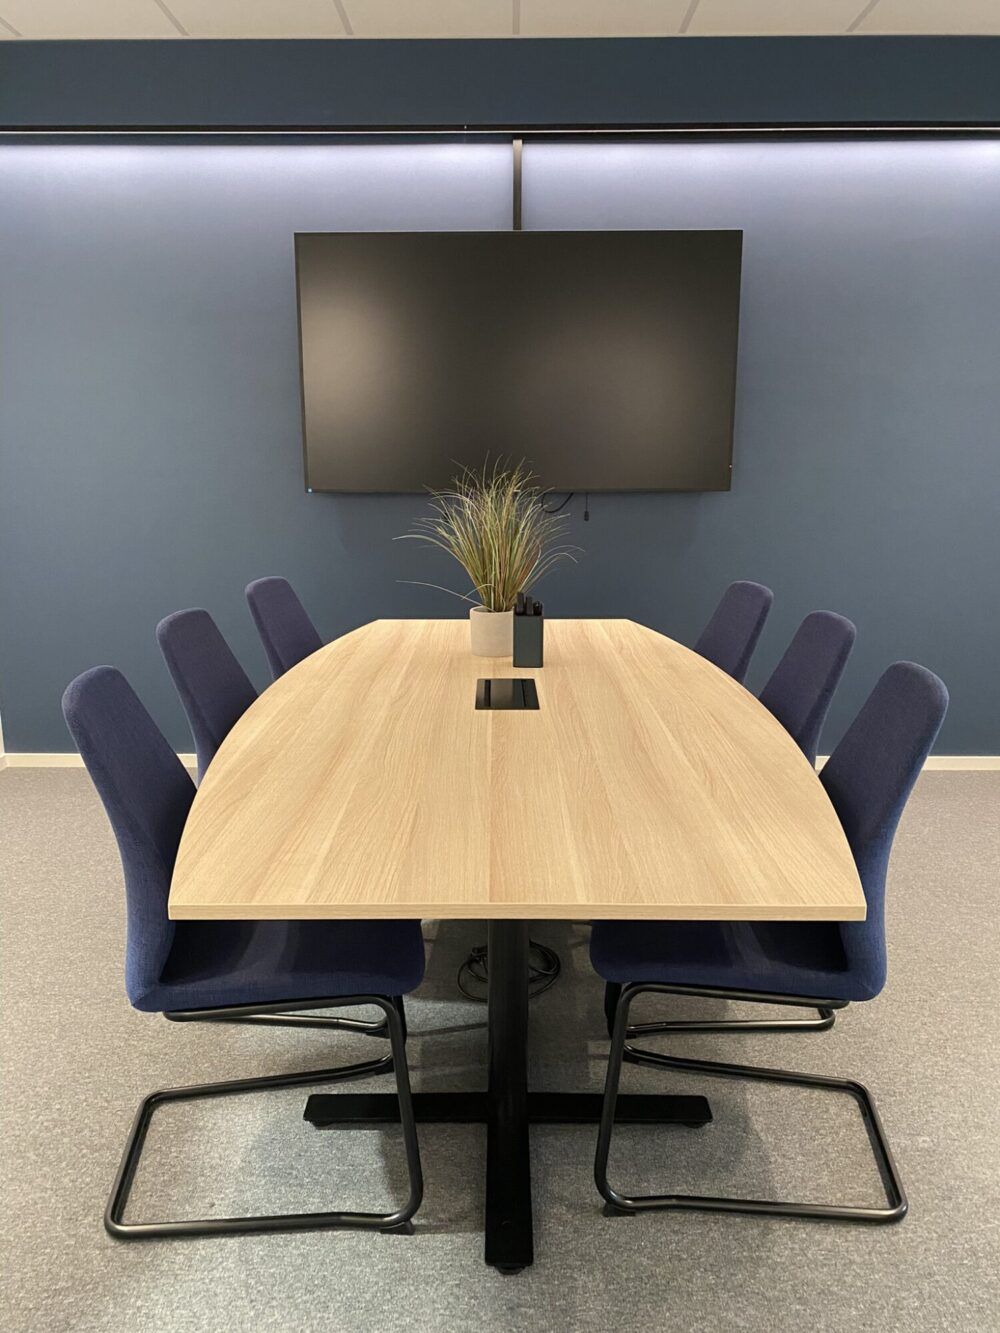 Felles møterom for alle ansatte med skjerm på vegg for presentasjoner og teamsmøter. Den blå fargen fra logoen til Enor går igjen i interiøret.